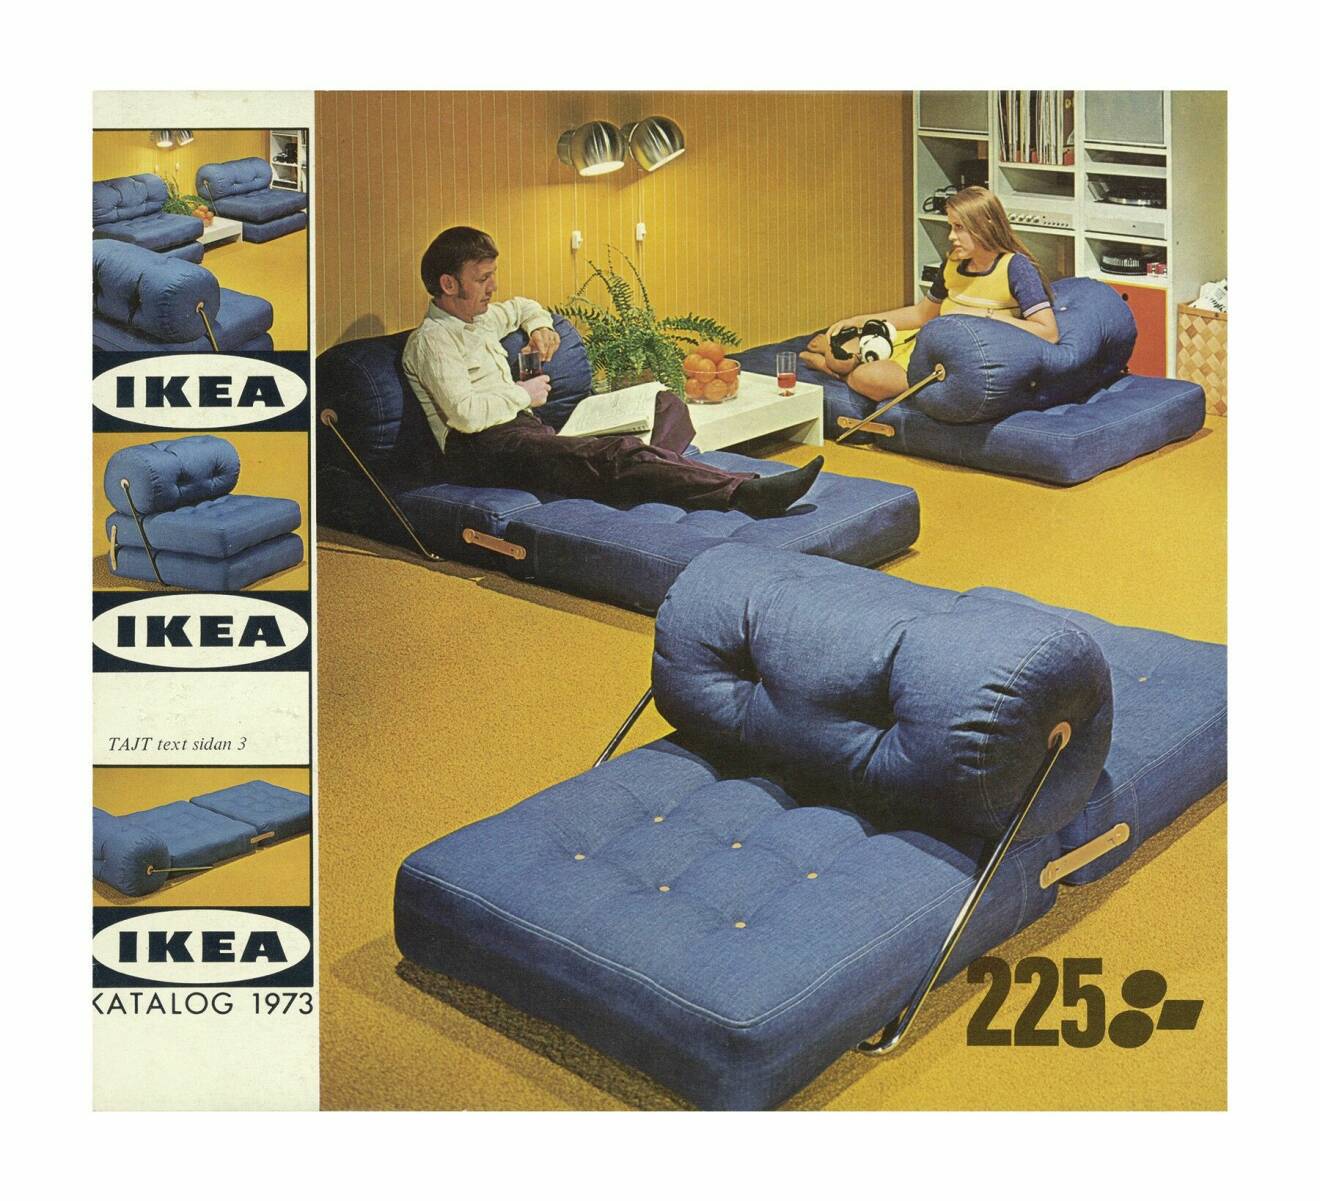 Ikea fåtölj Tajt 70-tal Gillis